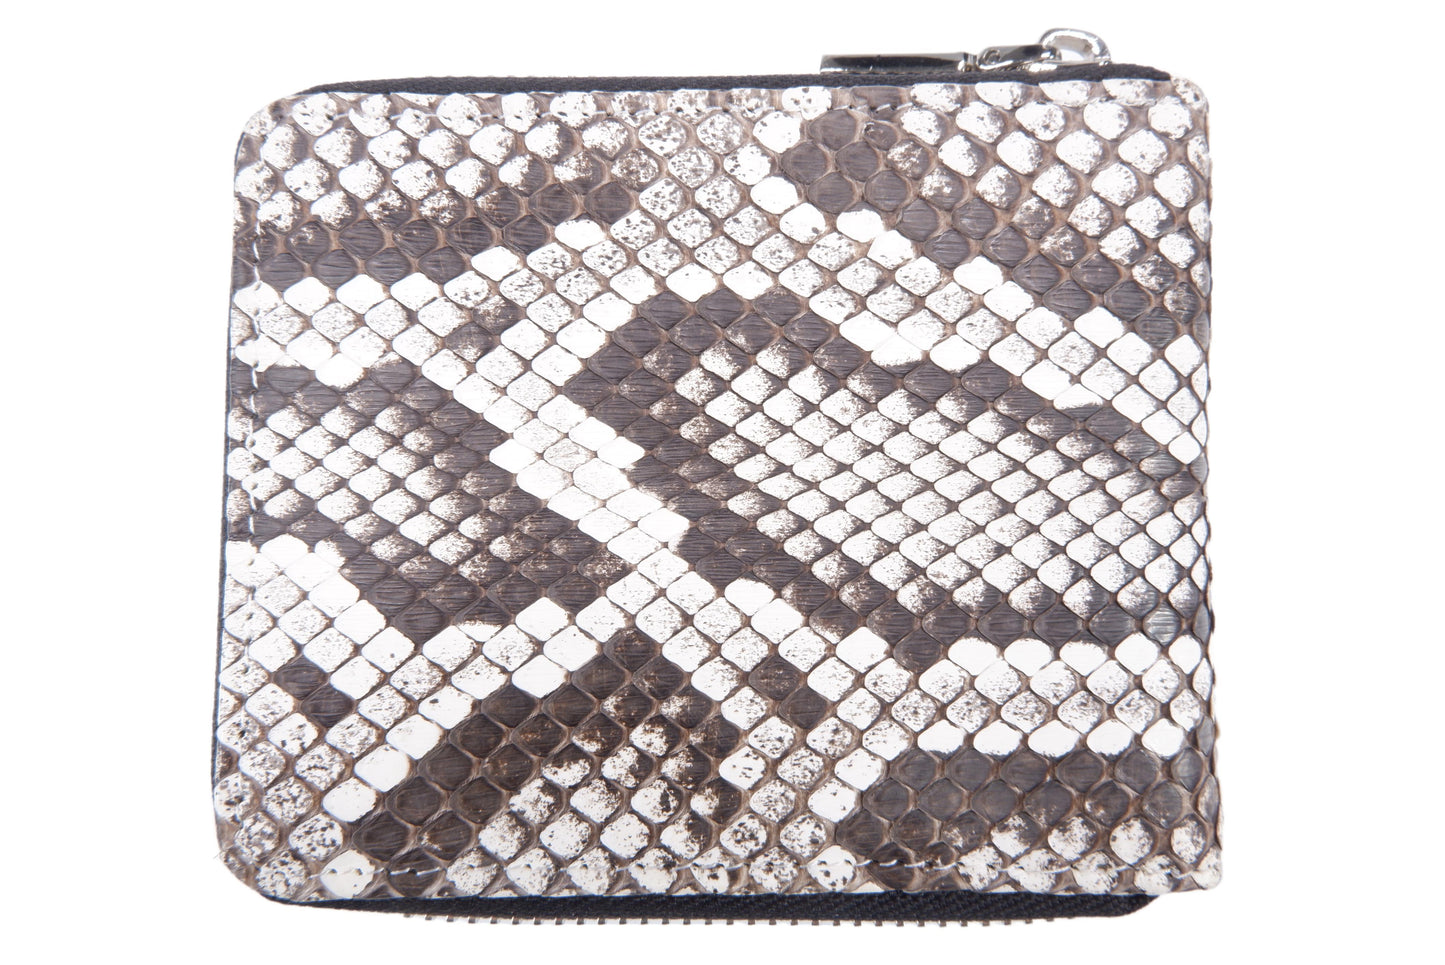 Genuine Burmese Python Skin Leather Zip Around Bifold Wallet